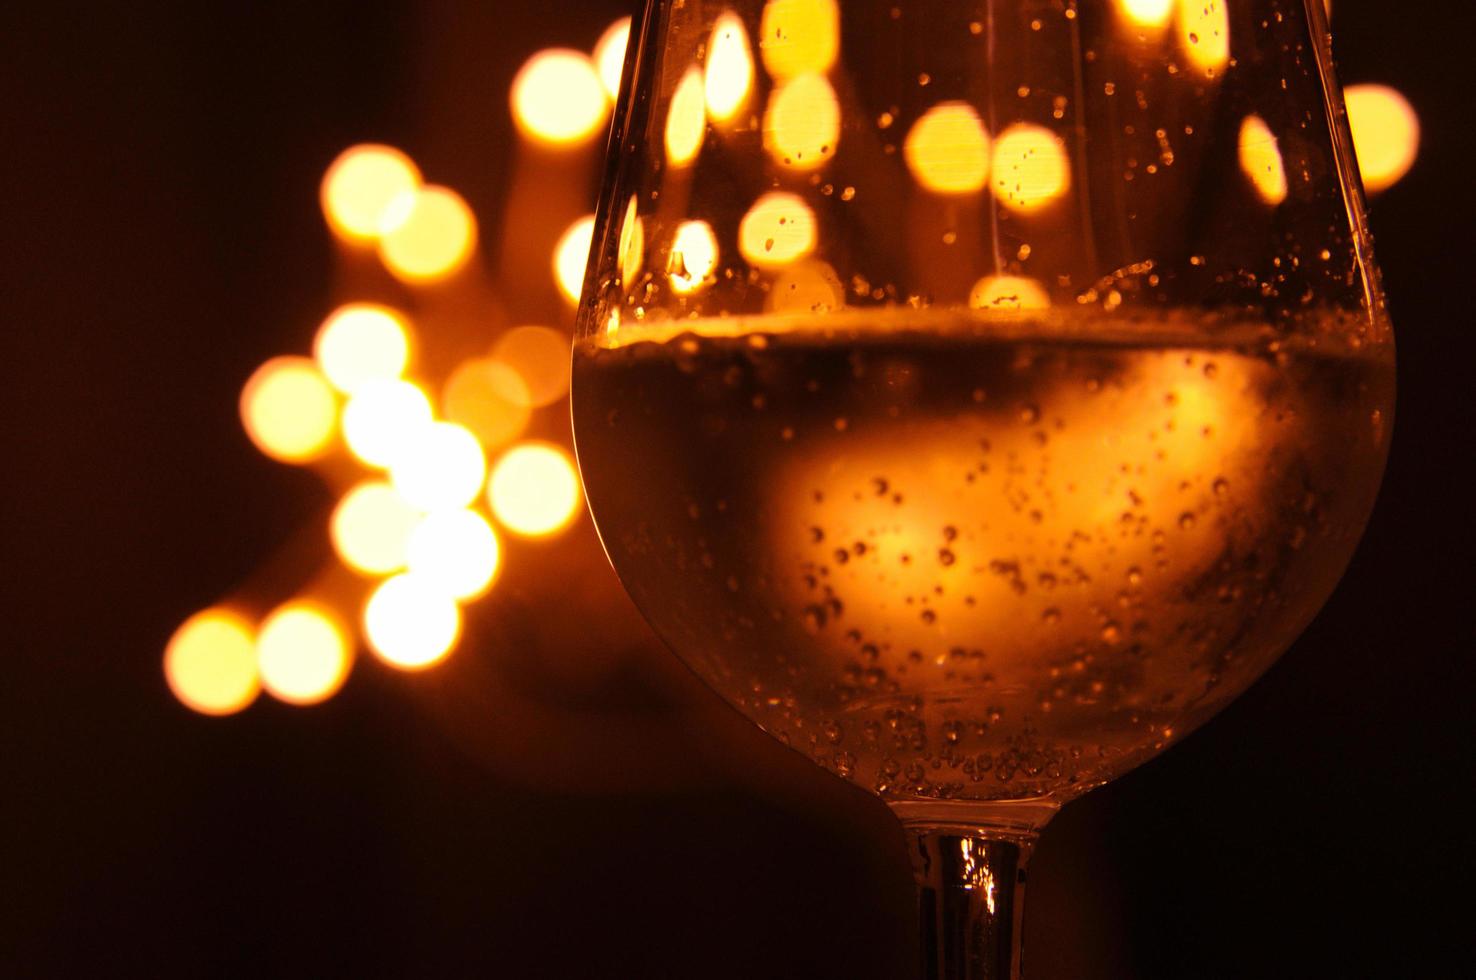 una copa de vino tiene la sombra de una luz amarilla y naranja que se aisló en un fondo de color oscuro foto